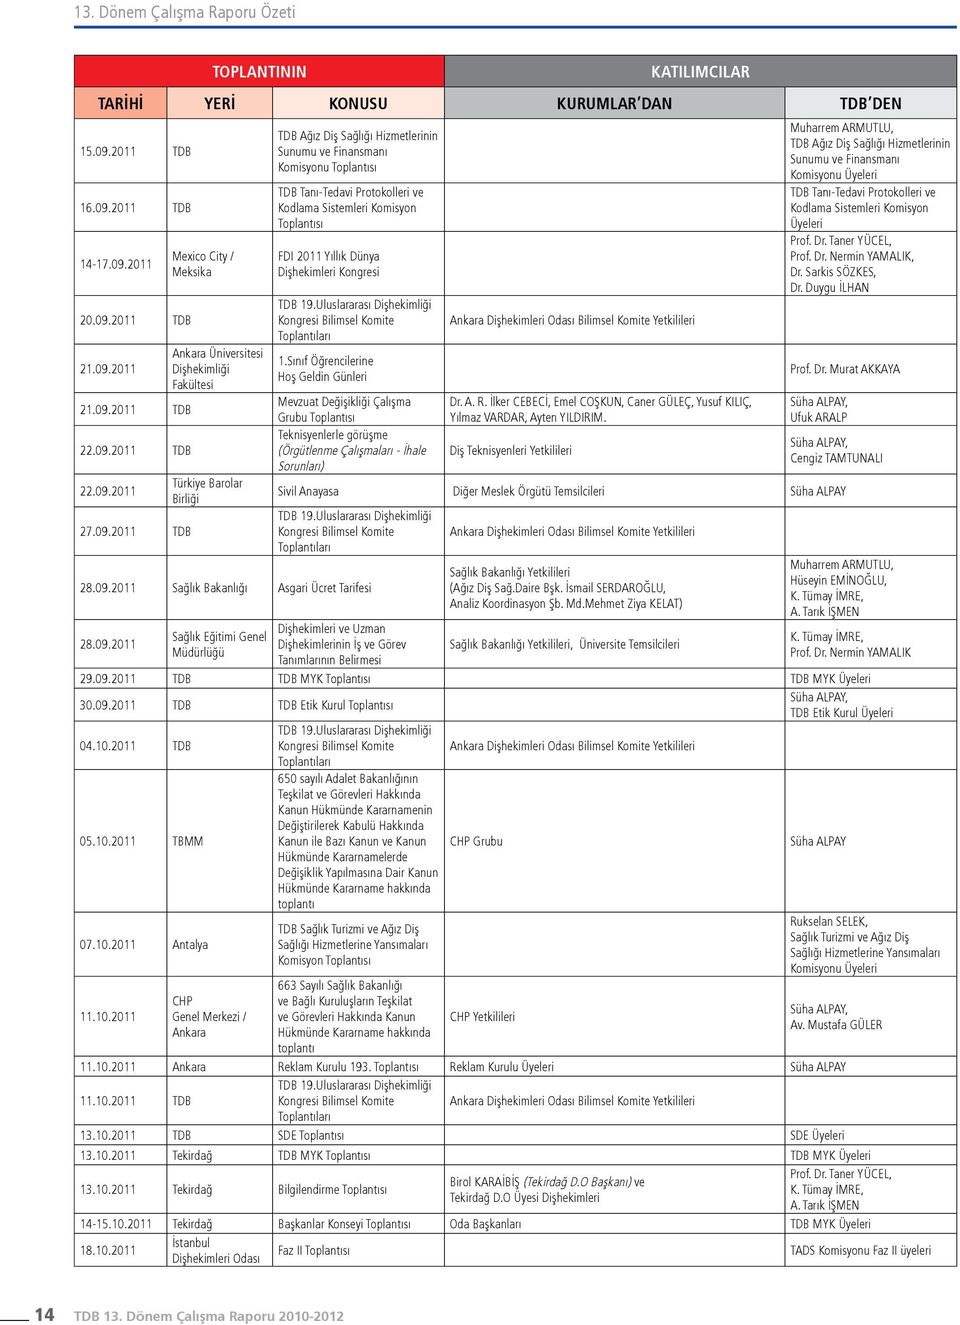 Protokolleri ve Kodlama Sistemleri Komisyon Toplantısı FDI 2011 Yıllık Dünya Dişhekimleri Kongresi TDB 19.Uluslararası Dişhekimliği Kongresi Bilimsel Komite Toplantıları 1.